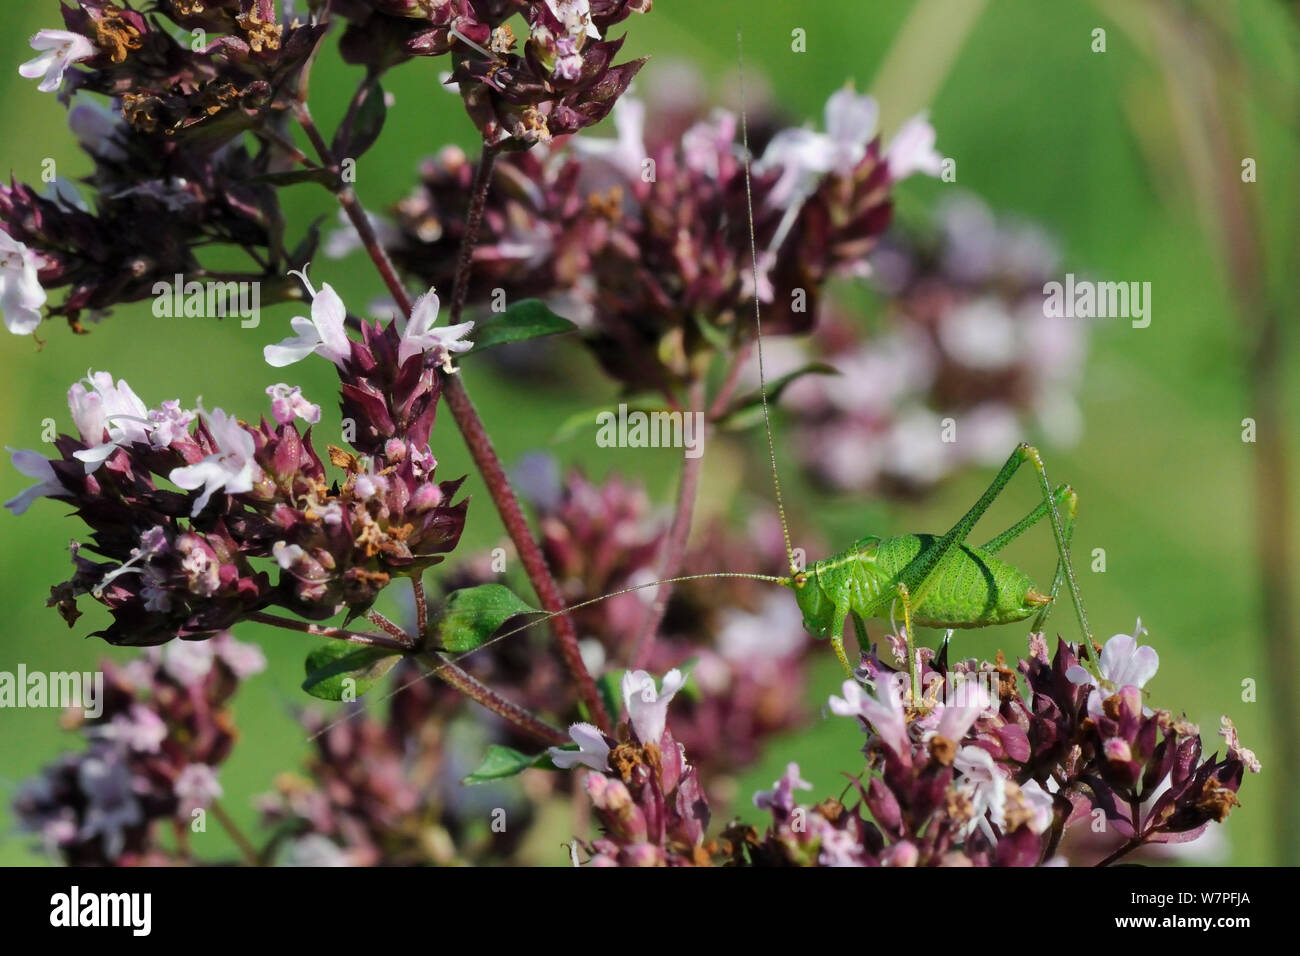 Gesprenkelte bush Cricket (Leptophyes punctatissima) stehen auf wilden Majoran (Origanum vulgare), Kreide Grünland Wiese, Wiltshire, UK, Juli. Stockfoto